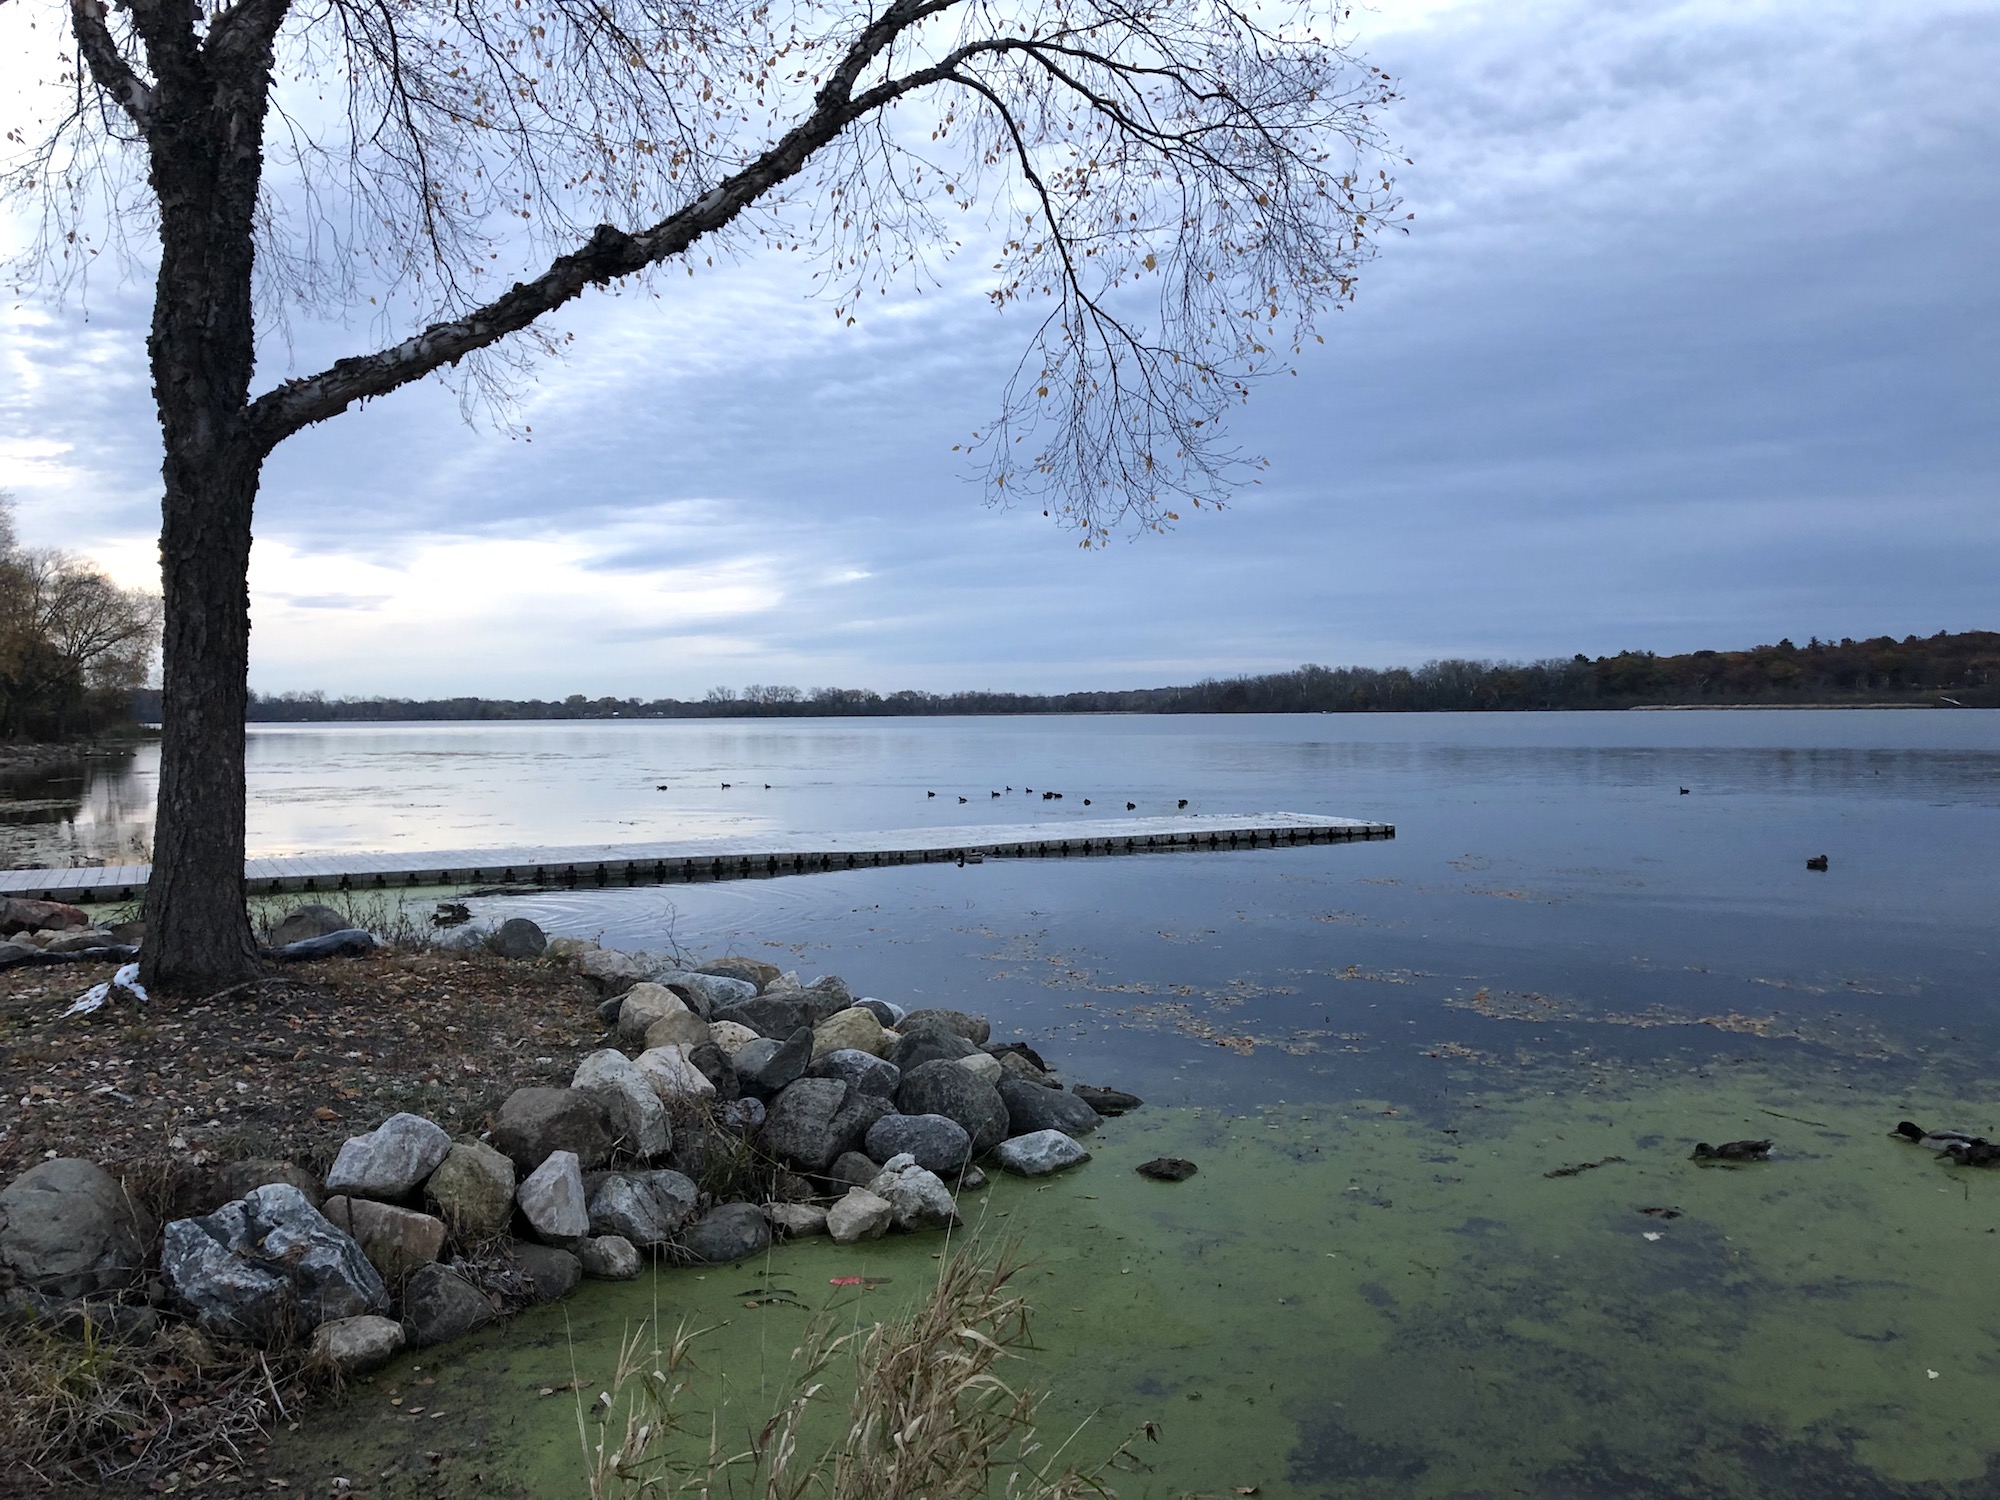 Lake Wingra on October 30, 2019.